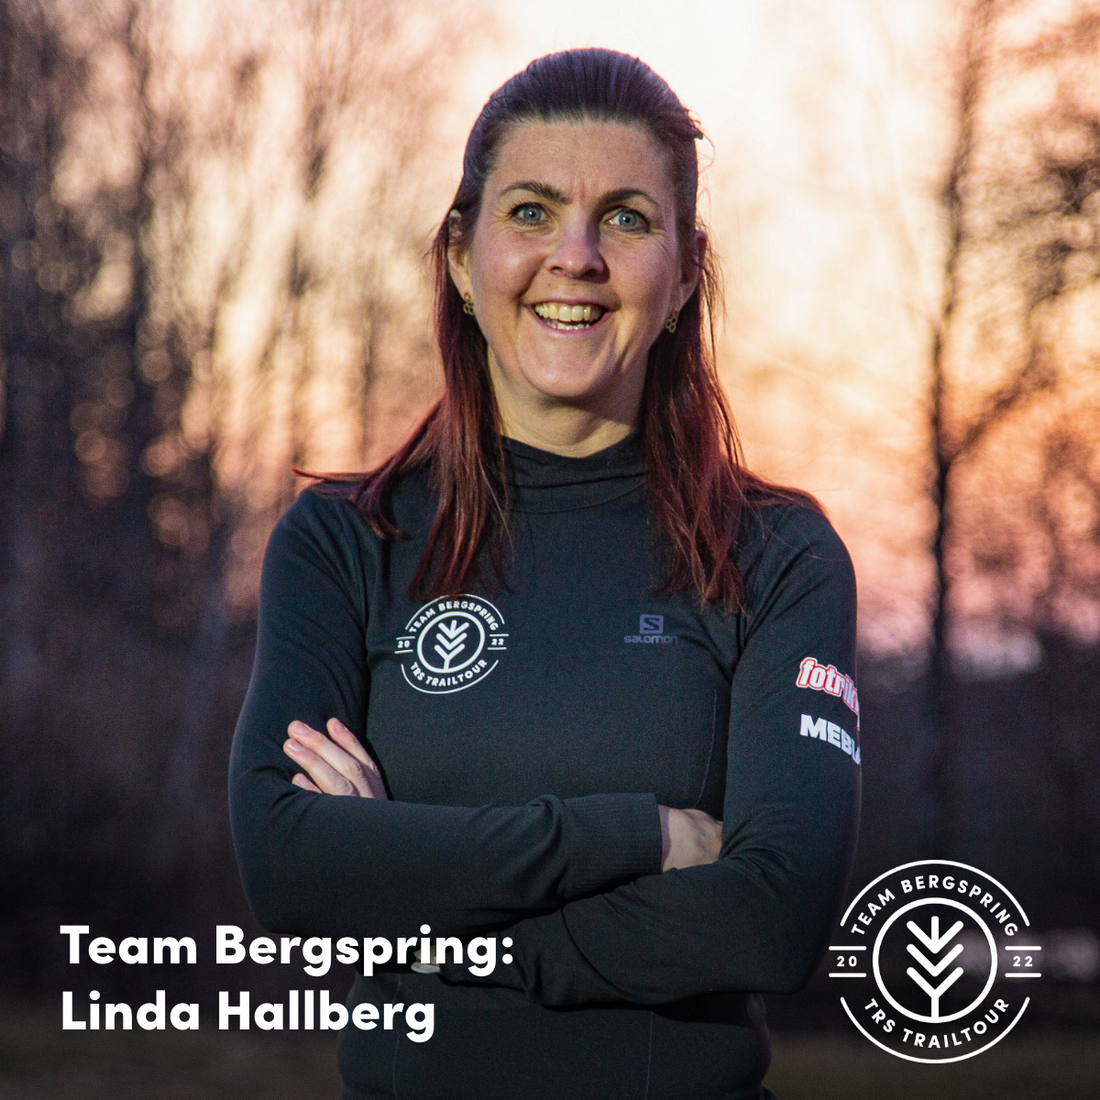 Linda Hallberg